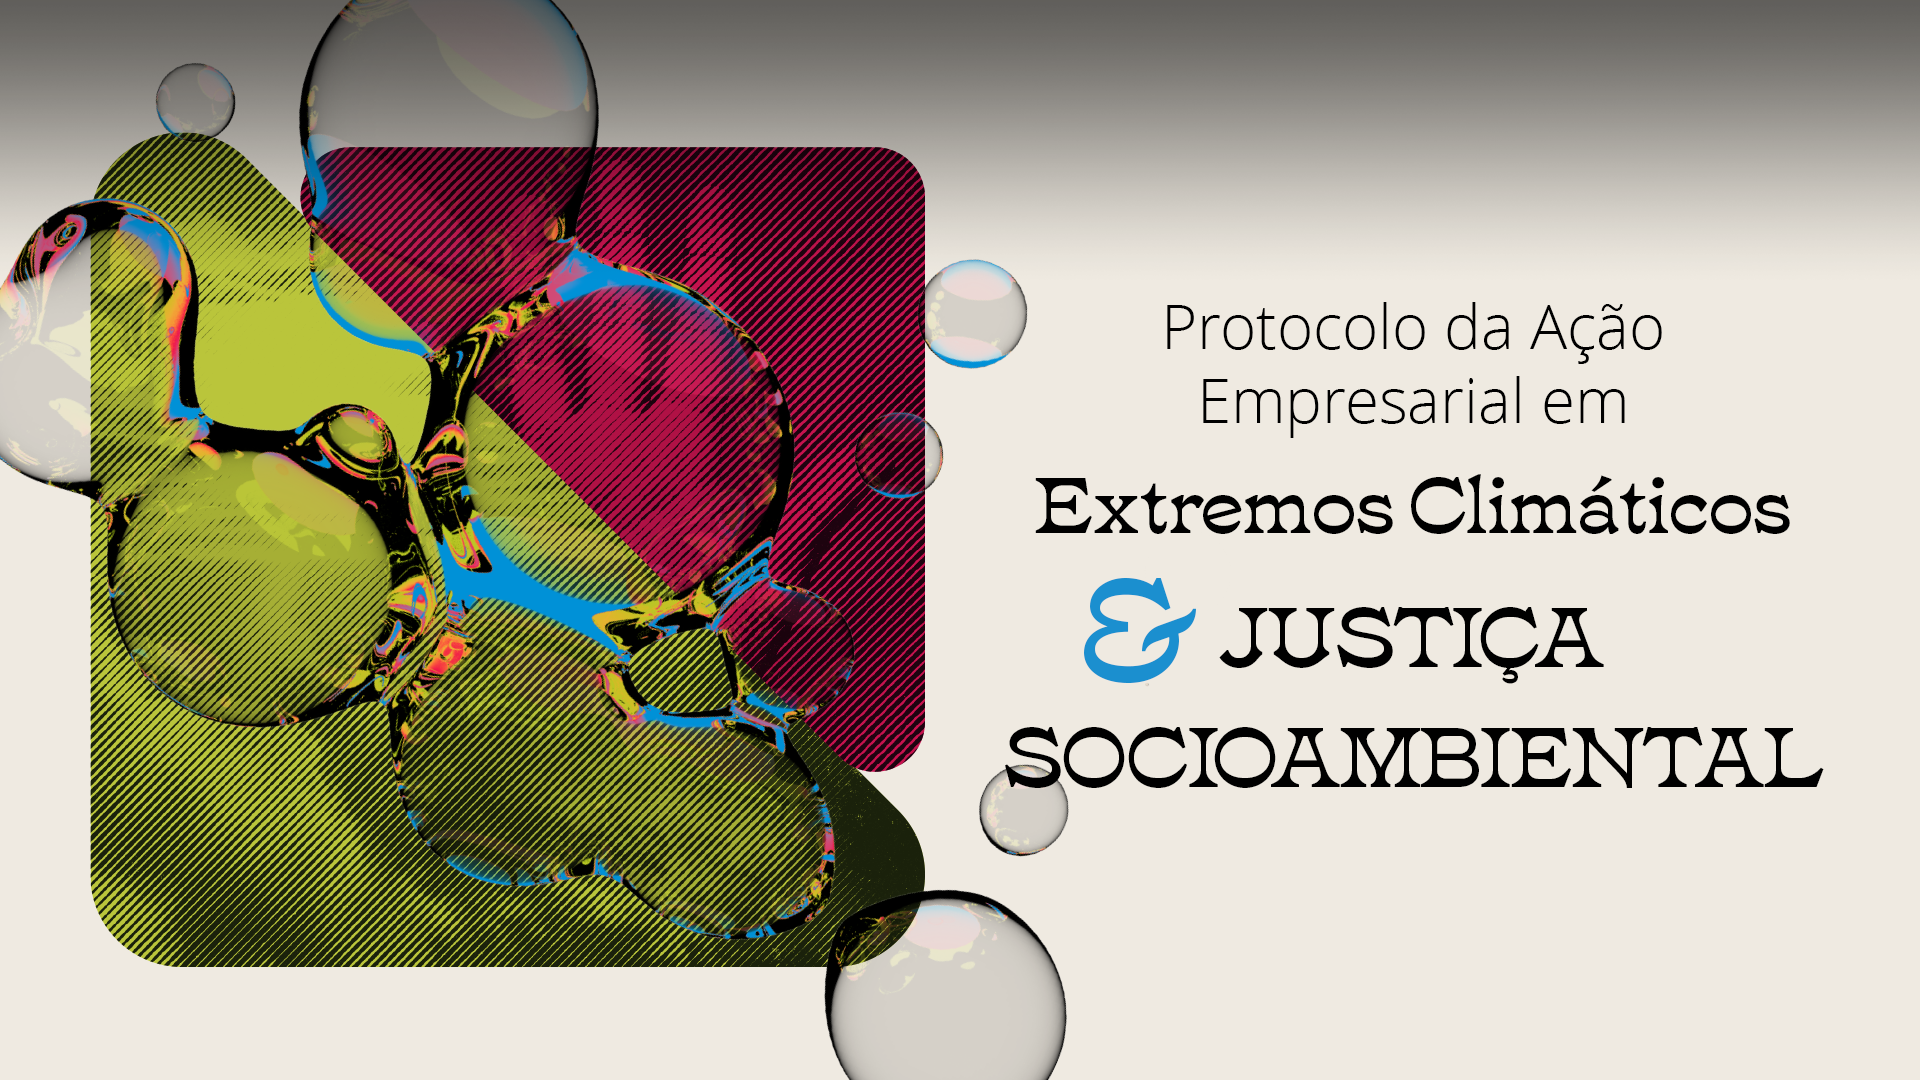 Protocolo de Ação Empresarial em Extremos Climáticos e Justiça Socioambiental